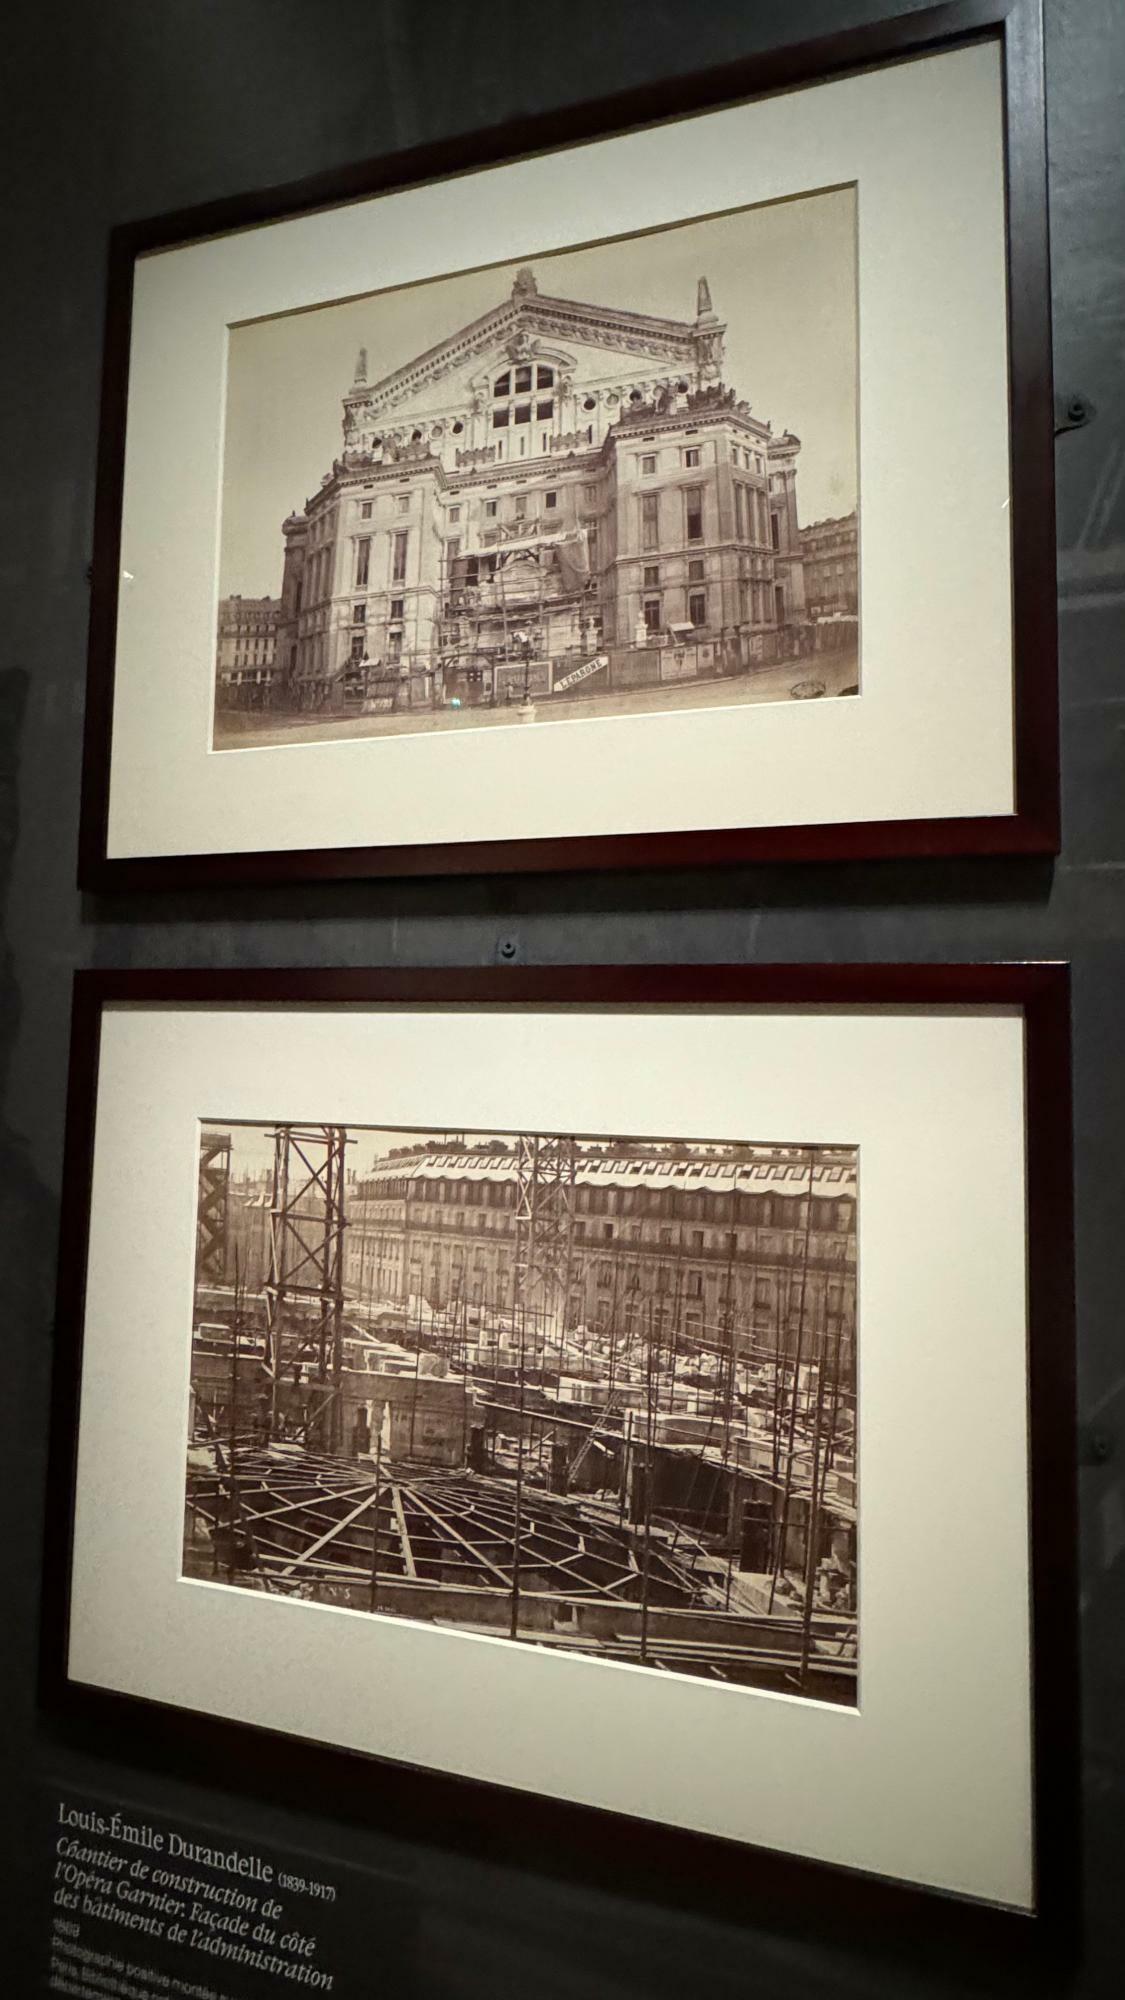 1875年に完成したオペラ座（オペラ・ガルニエ）建築中の写真。上は1869年、下は1865年撮影。いずれもフランス国立図書館所蔵